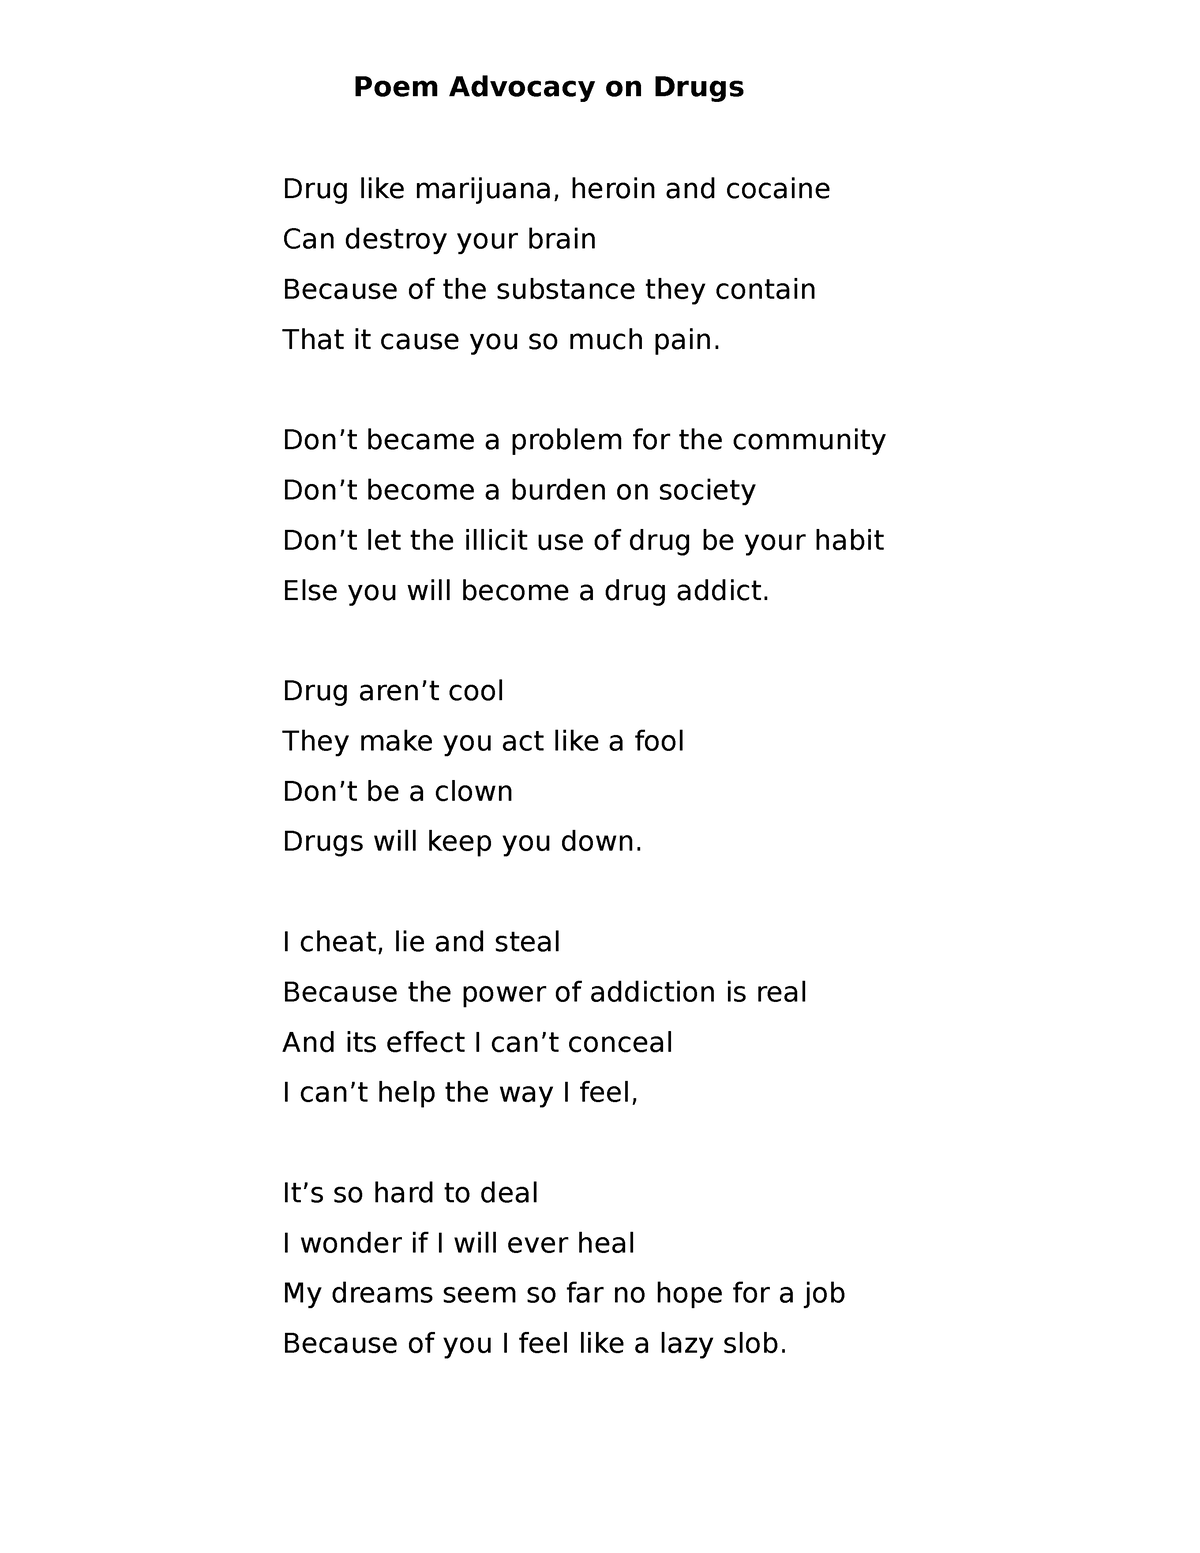 Poem Advocacy on Drugs - Poem Advocacy on Drugs Drug like marijuana ...